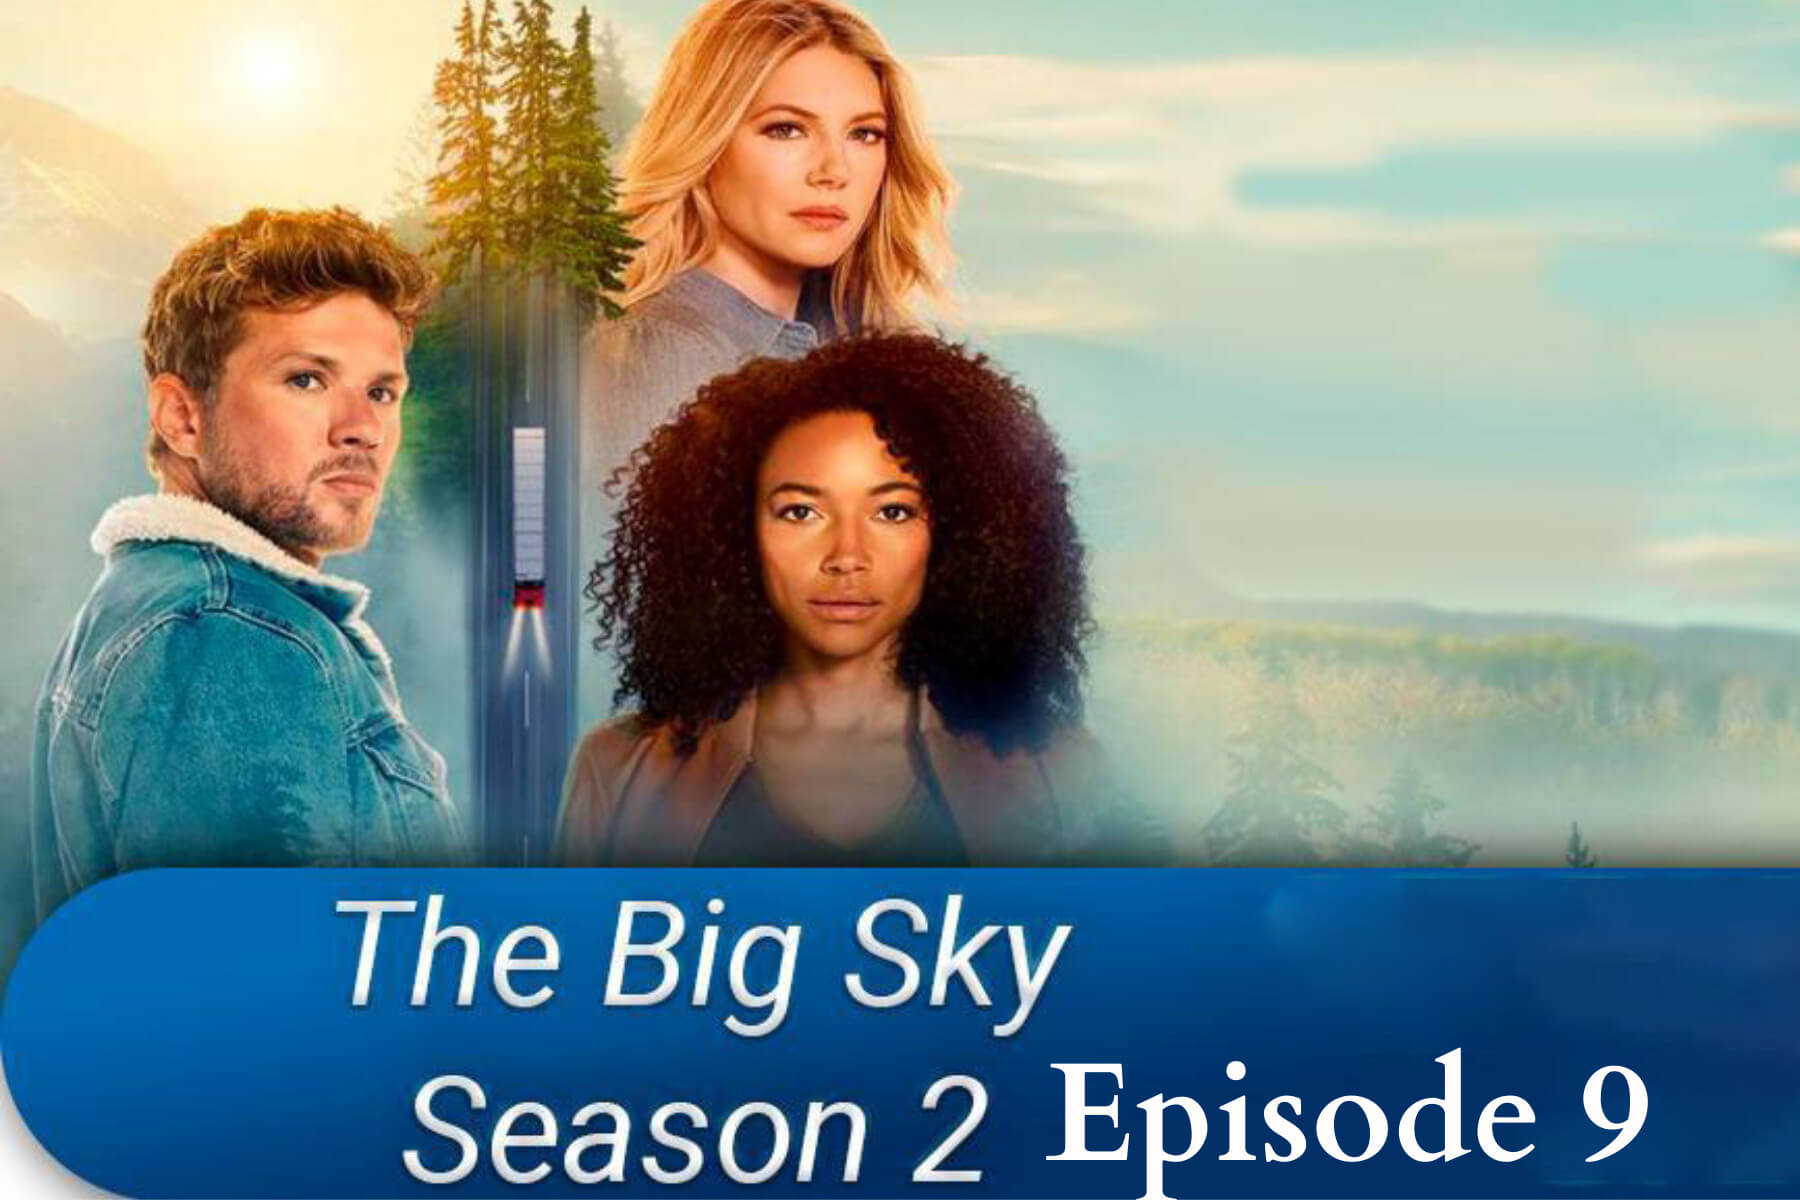 Big Sky Season 2 Episode 9 Is Renewed!